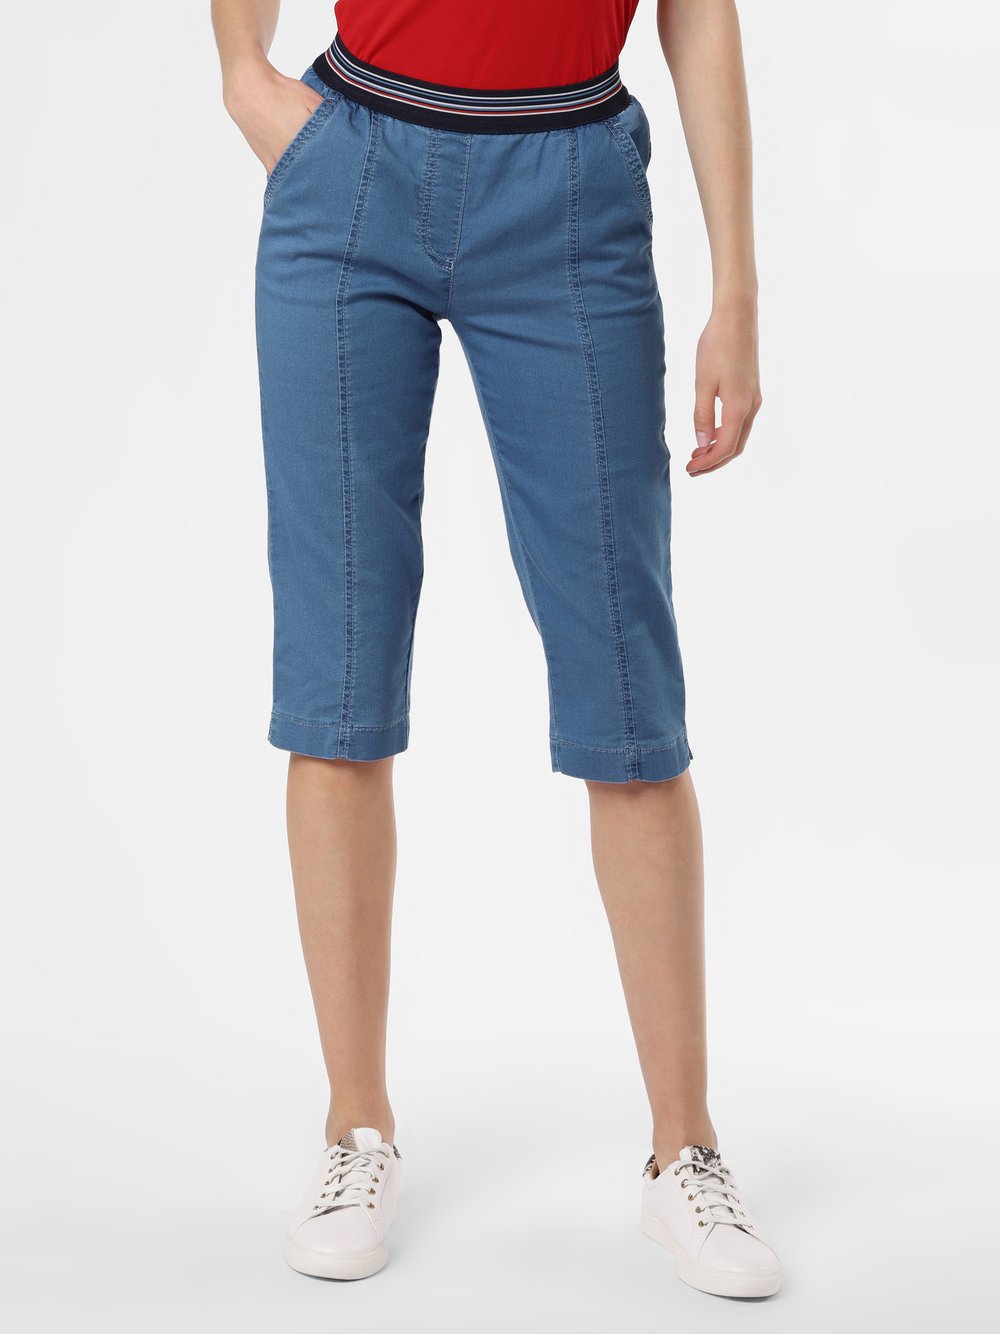 TONI - Spodnie damskie – Sue Joggpants Capri, niebieski